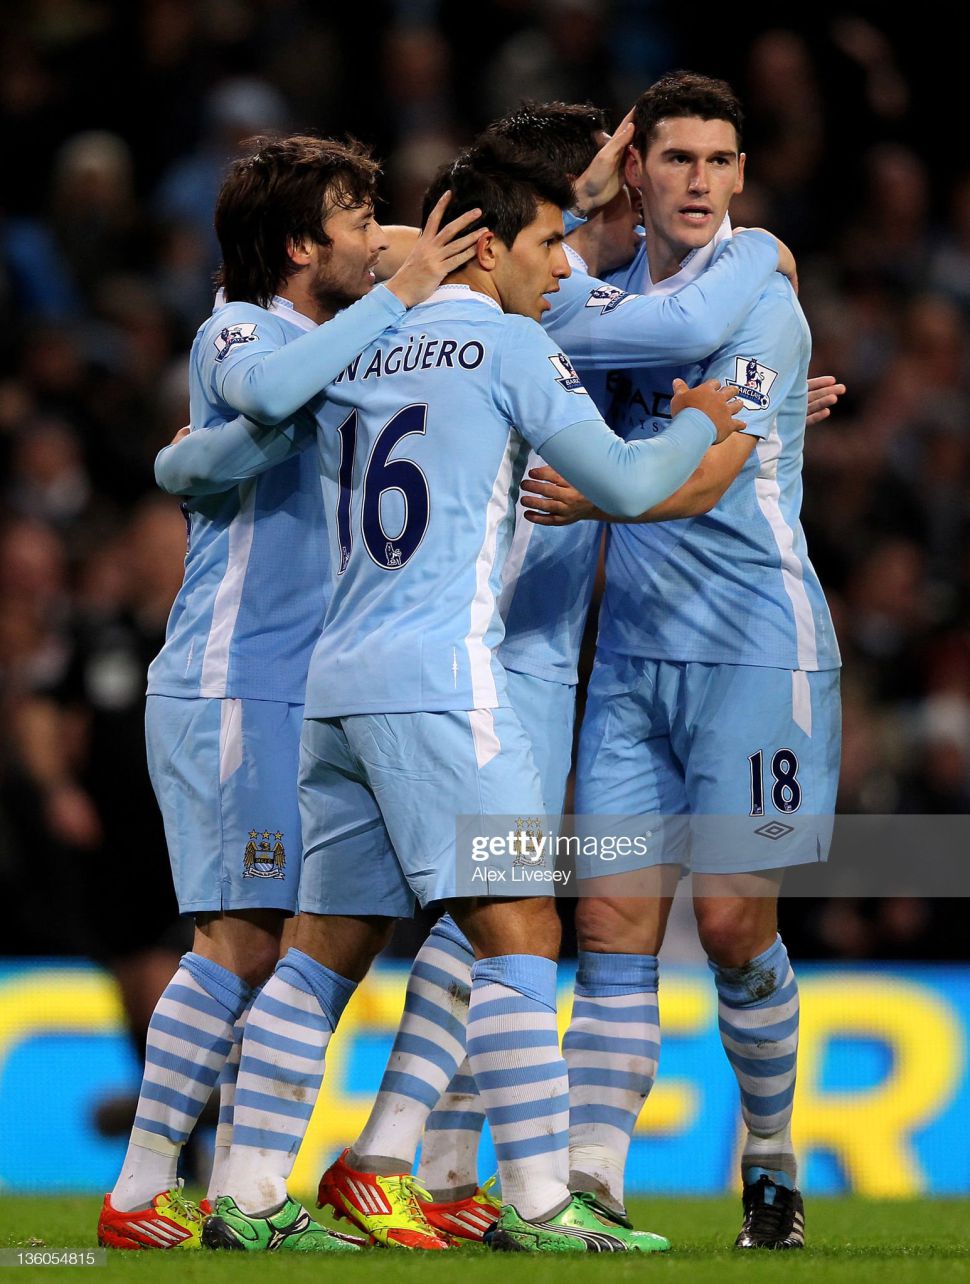 Áo đấu Aguero 16 Manchester City 2011-2012 home shirt jersey blue long